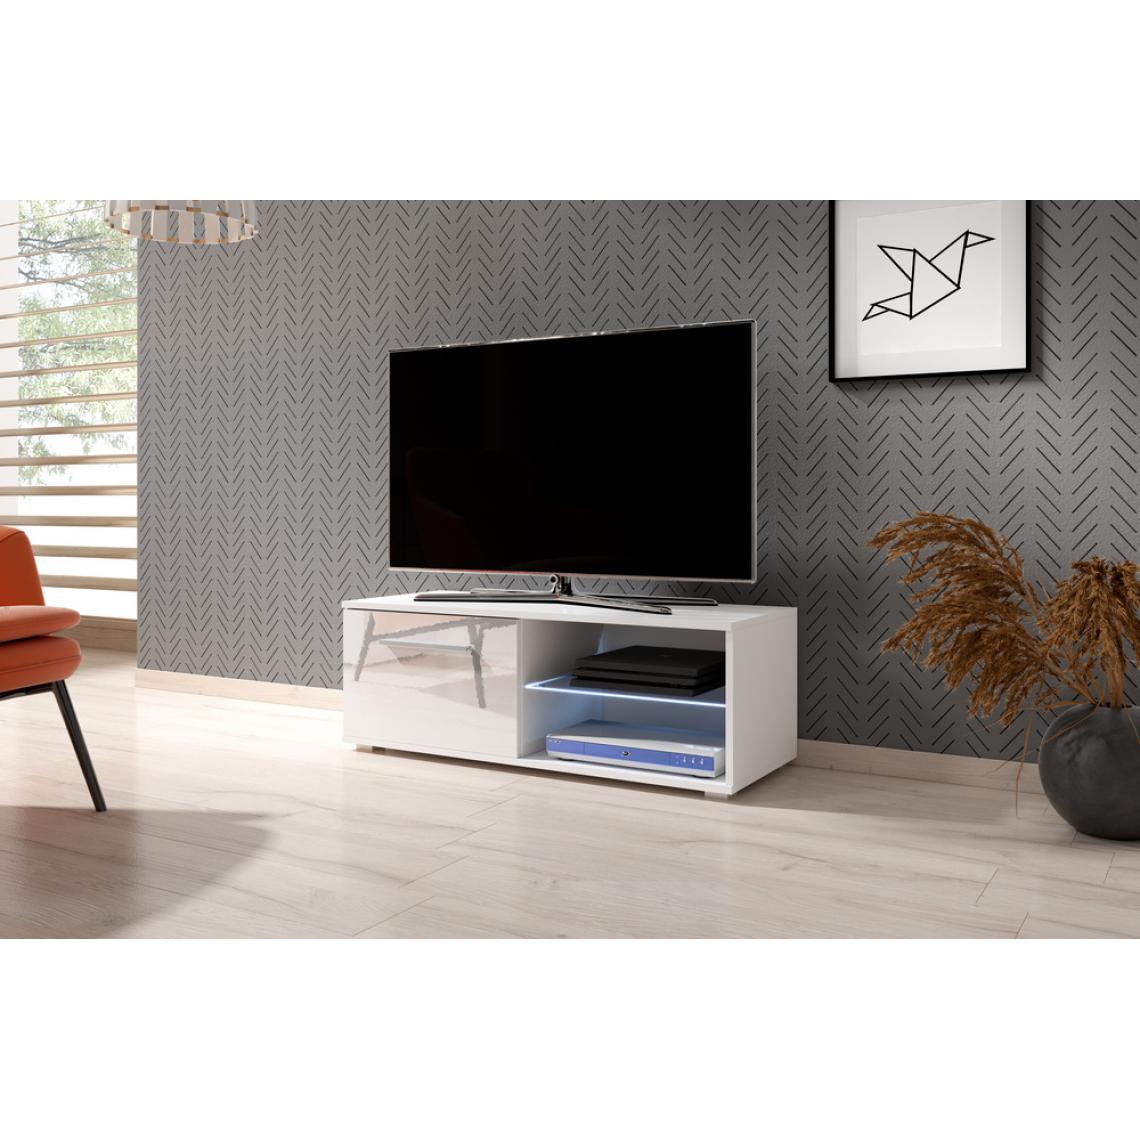 Hucoco - MOOD - Meuble TV style contemporain salon séjour - 100x40x36 cm - Meuble de télévision avec rangements - Mat + Gloss - Blanc - Meubles TV, Hi-Fi